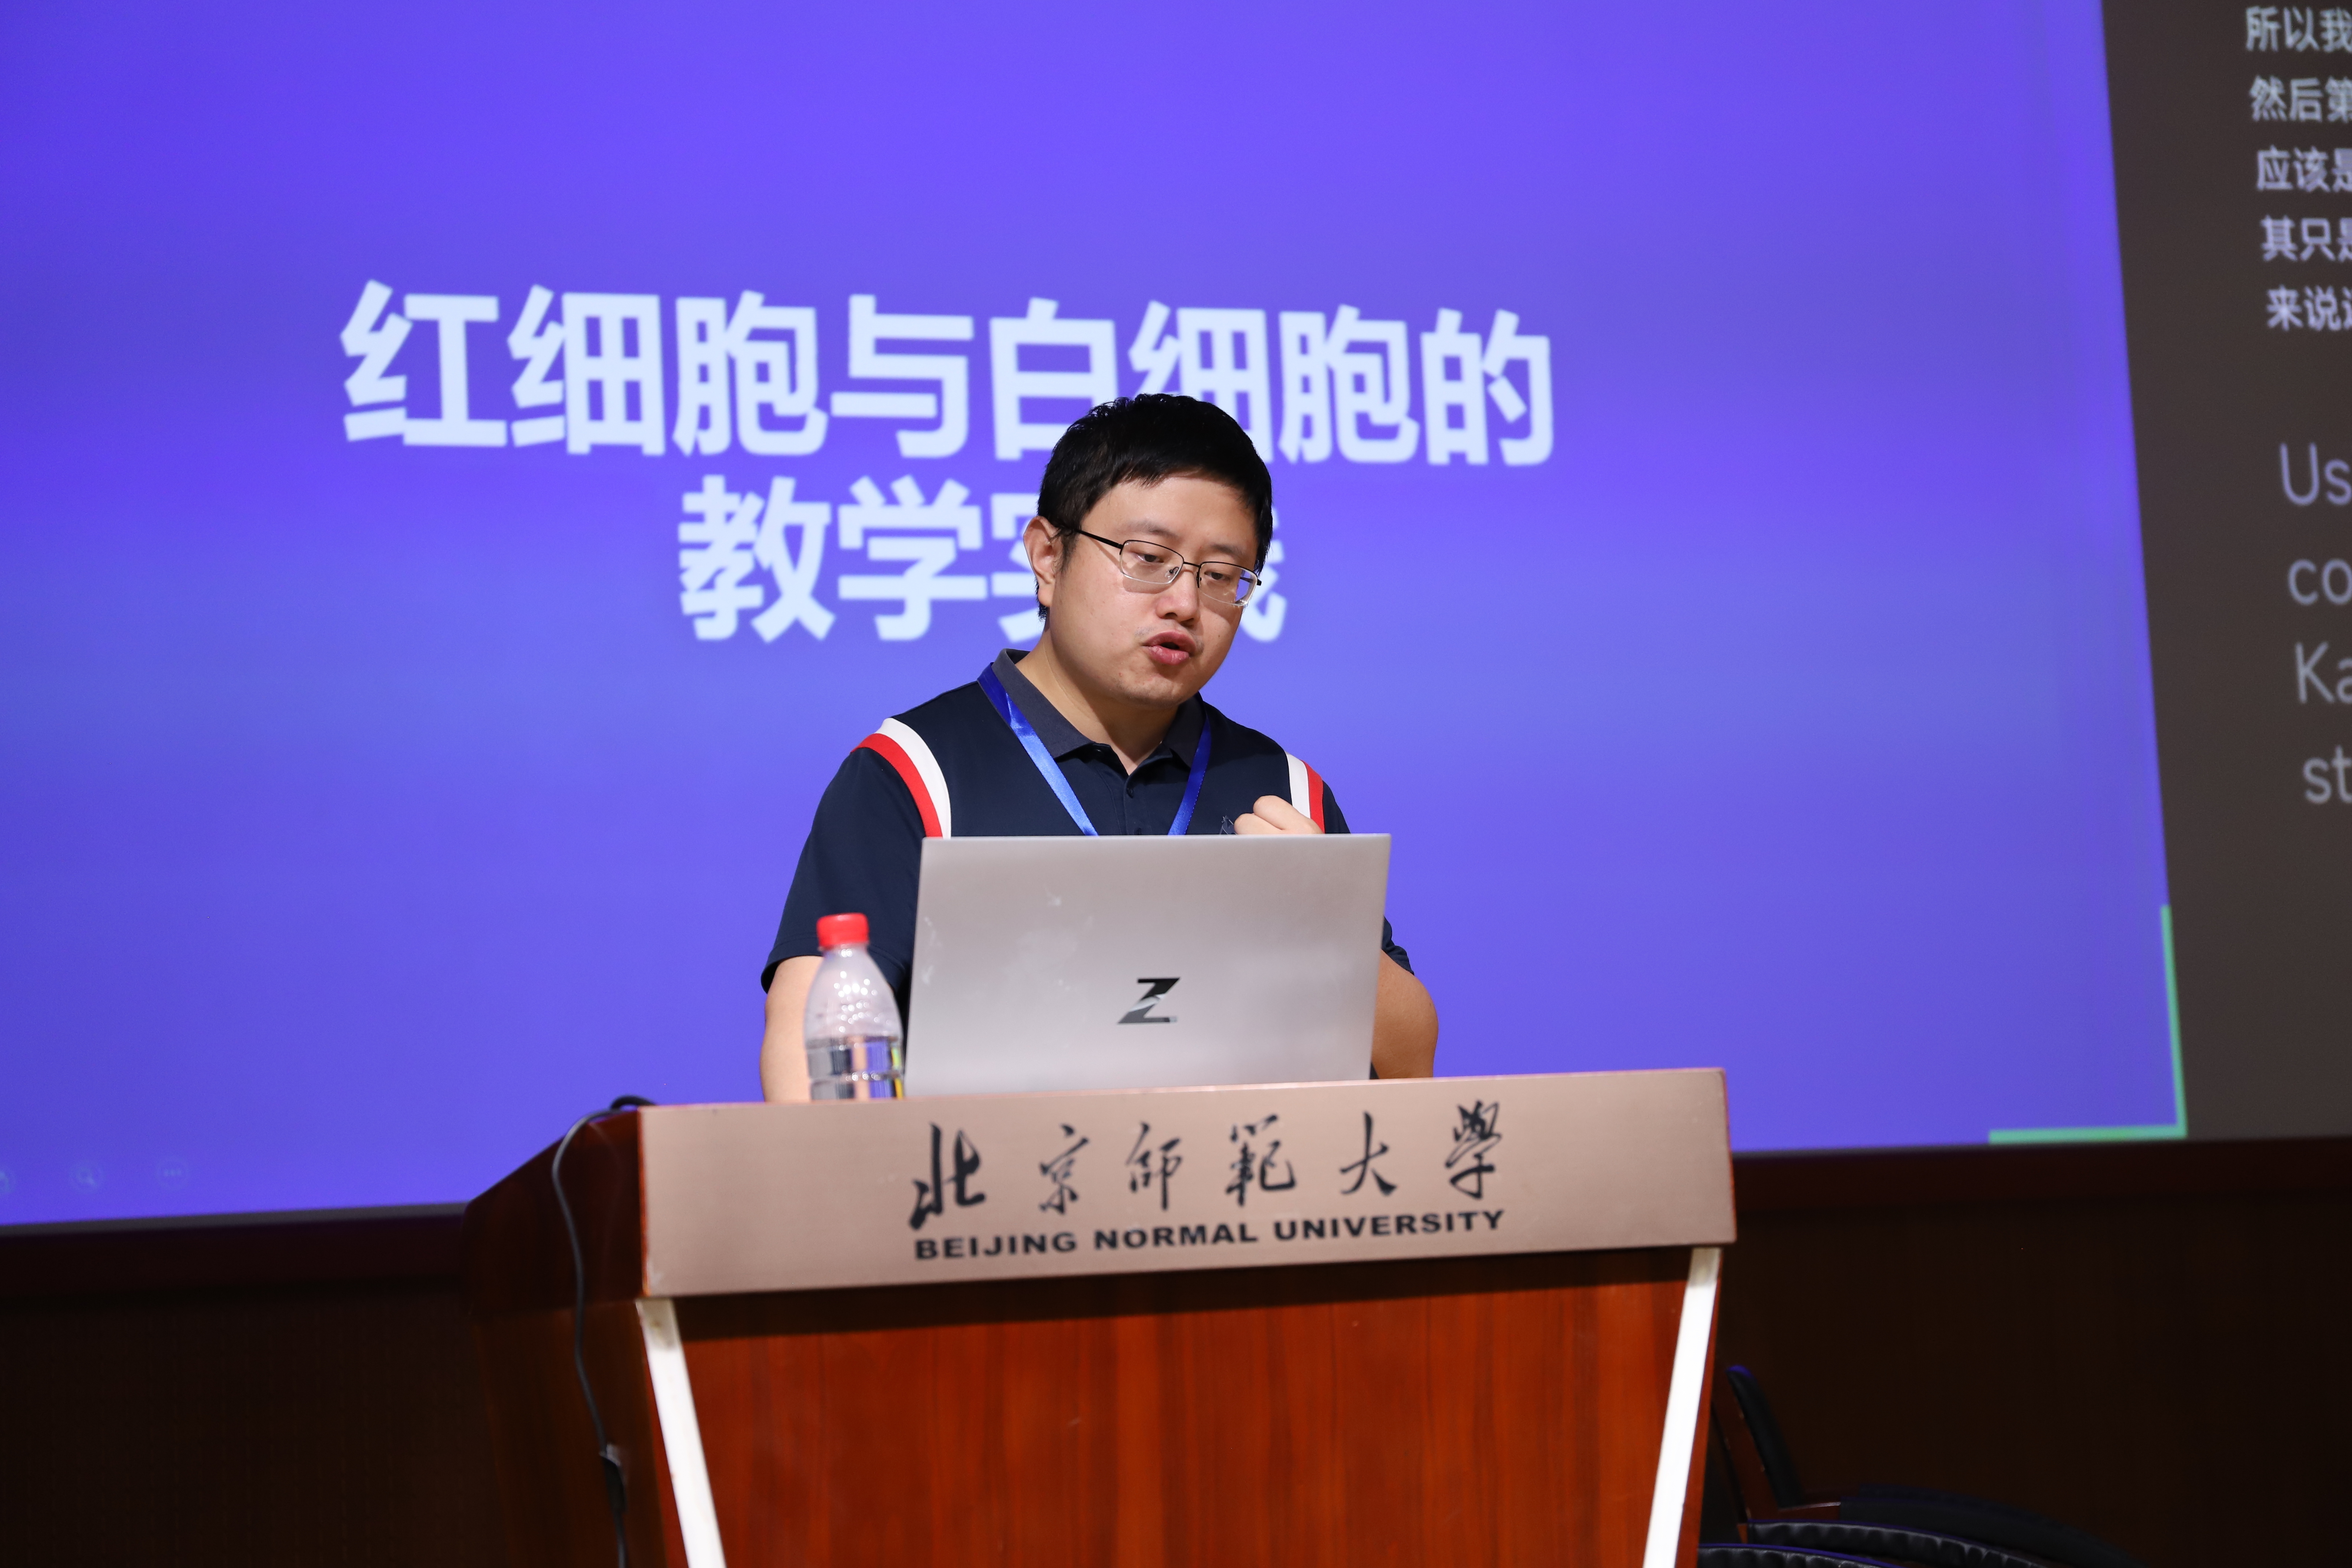 熊硕 XIONG Shuo  华中科技大学·新闻与信息传播学院